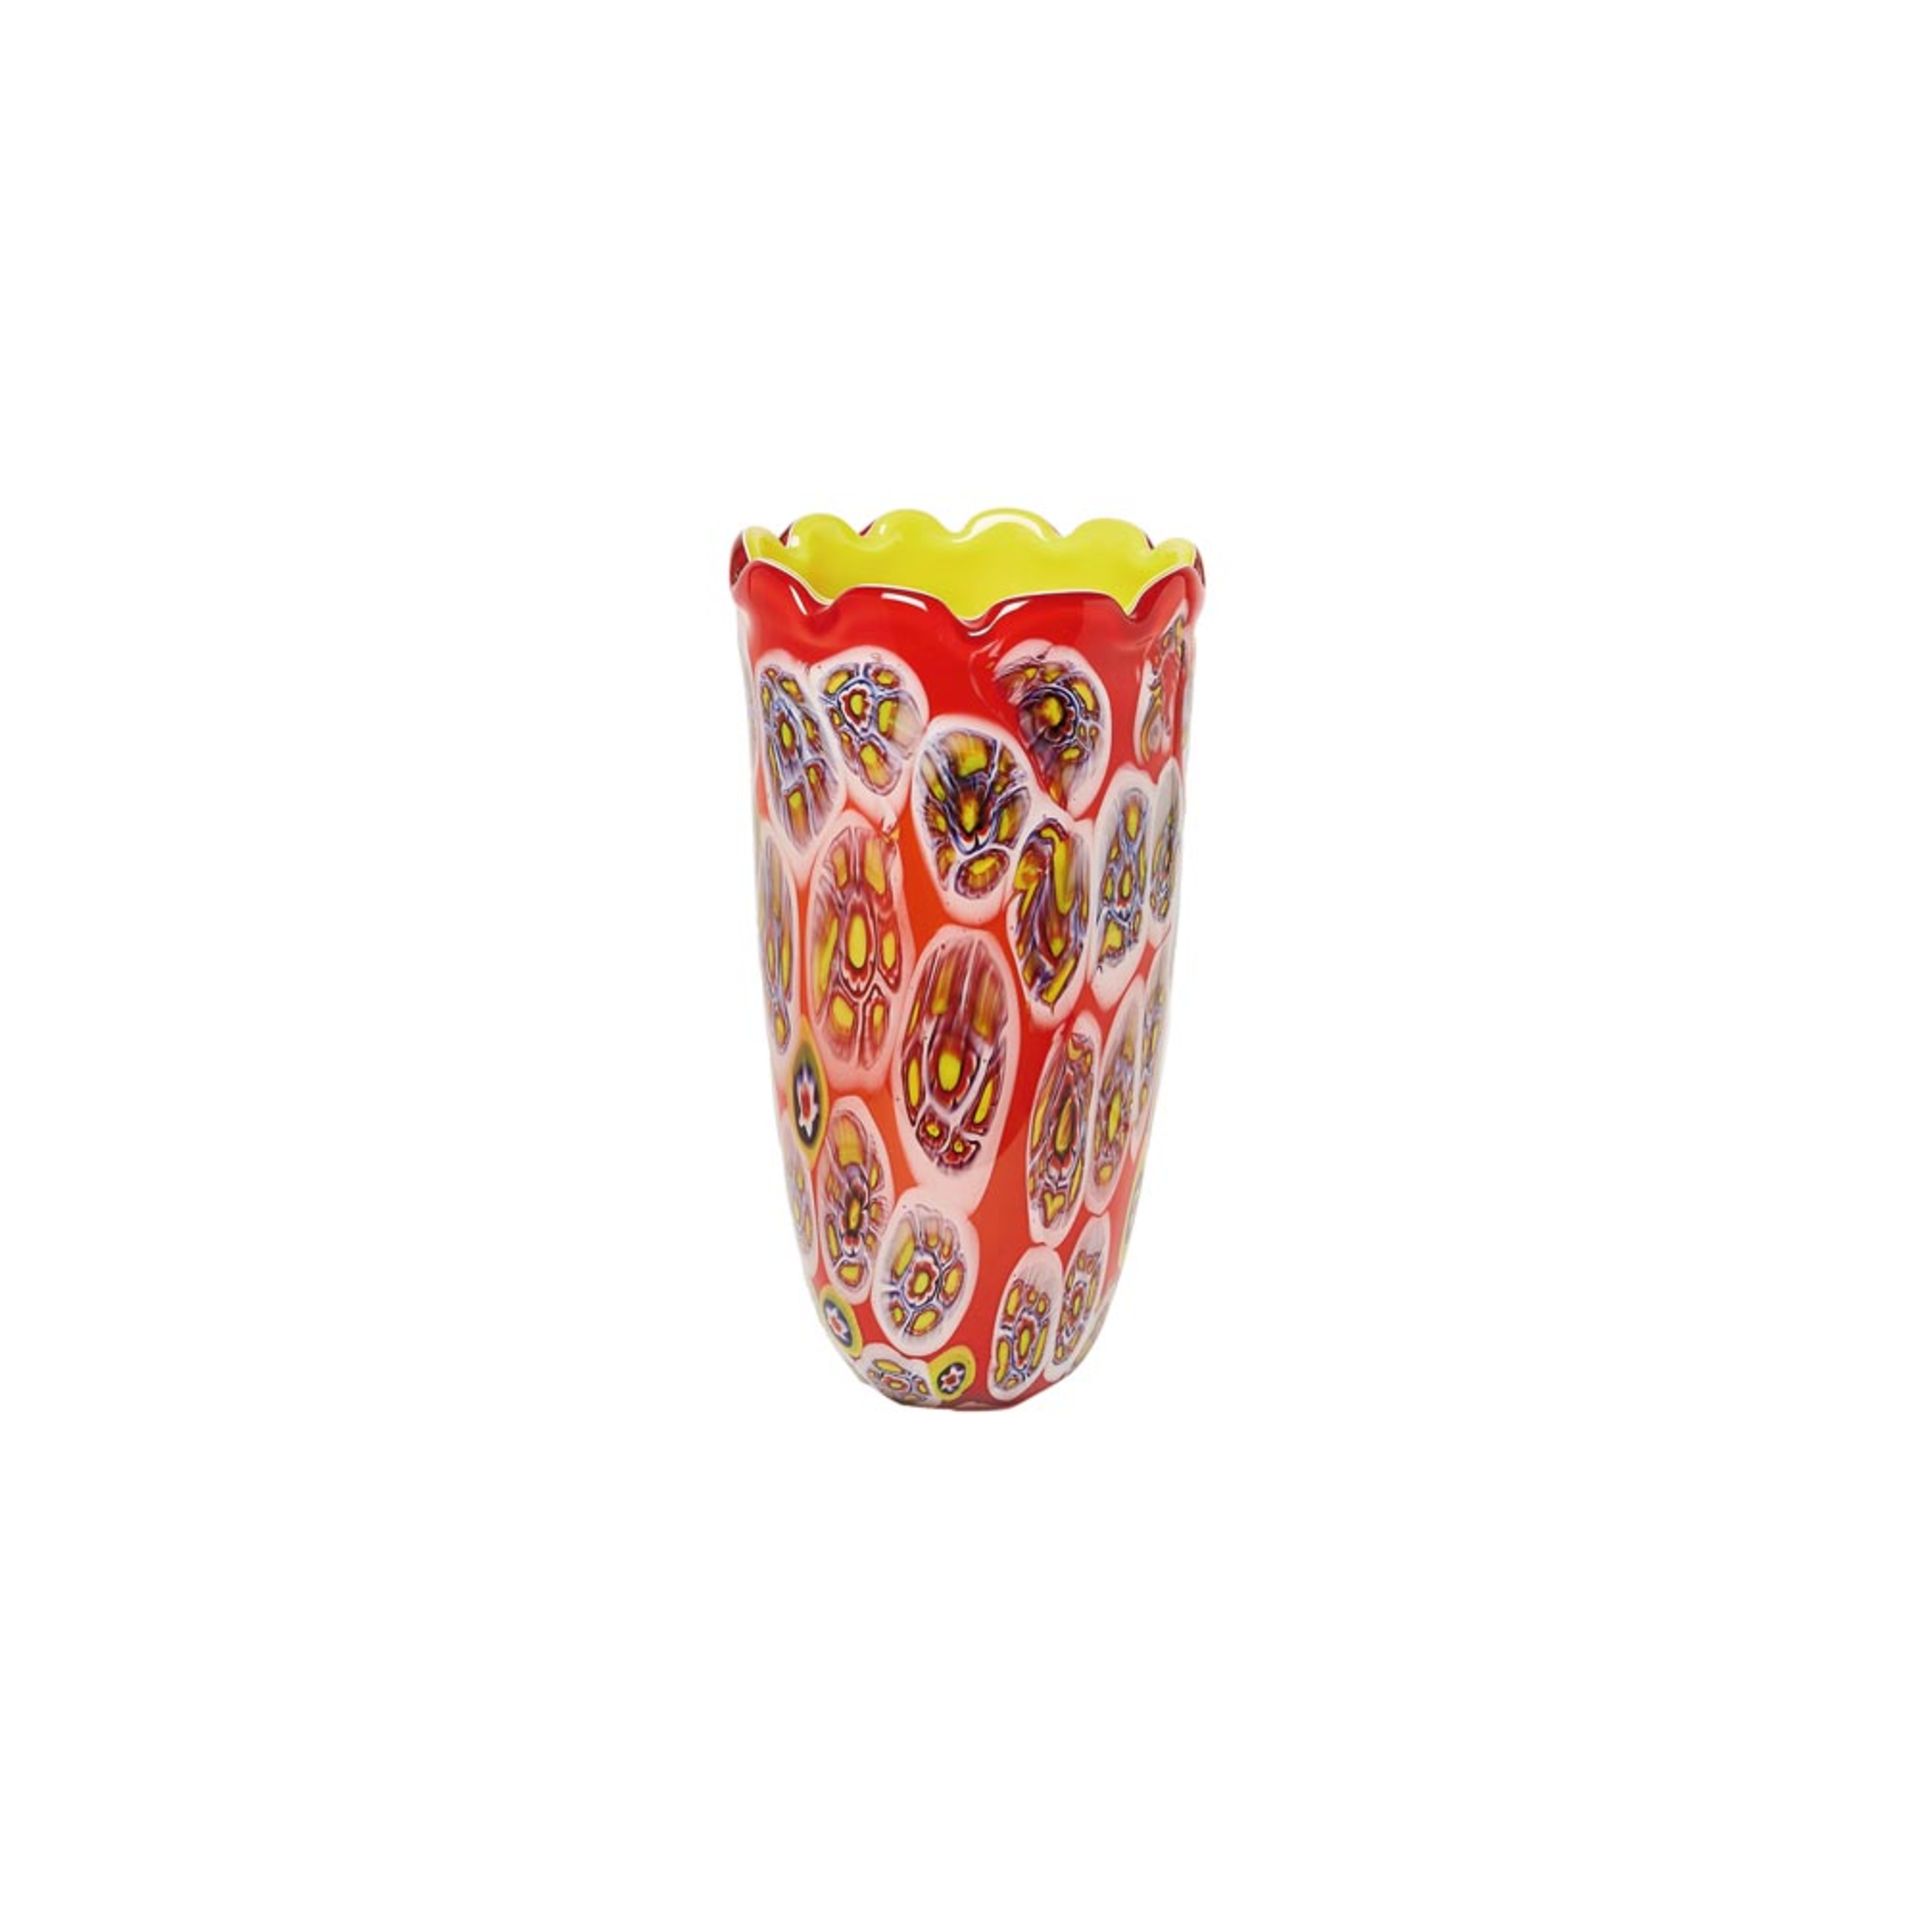 Jarrón de boca ondulada en cristal de Murano "incamiciato" de tonalidades roja, blanca y amarilla